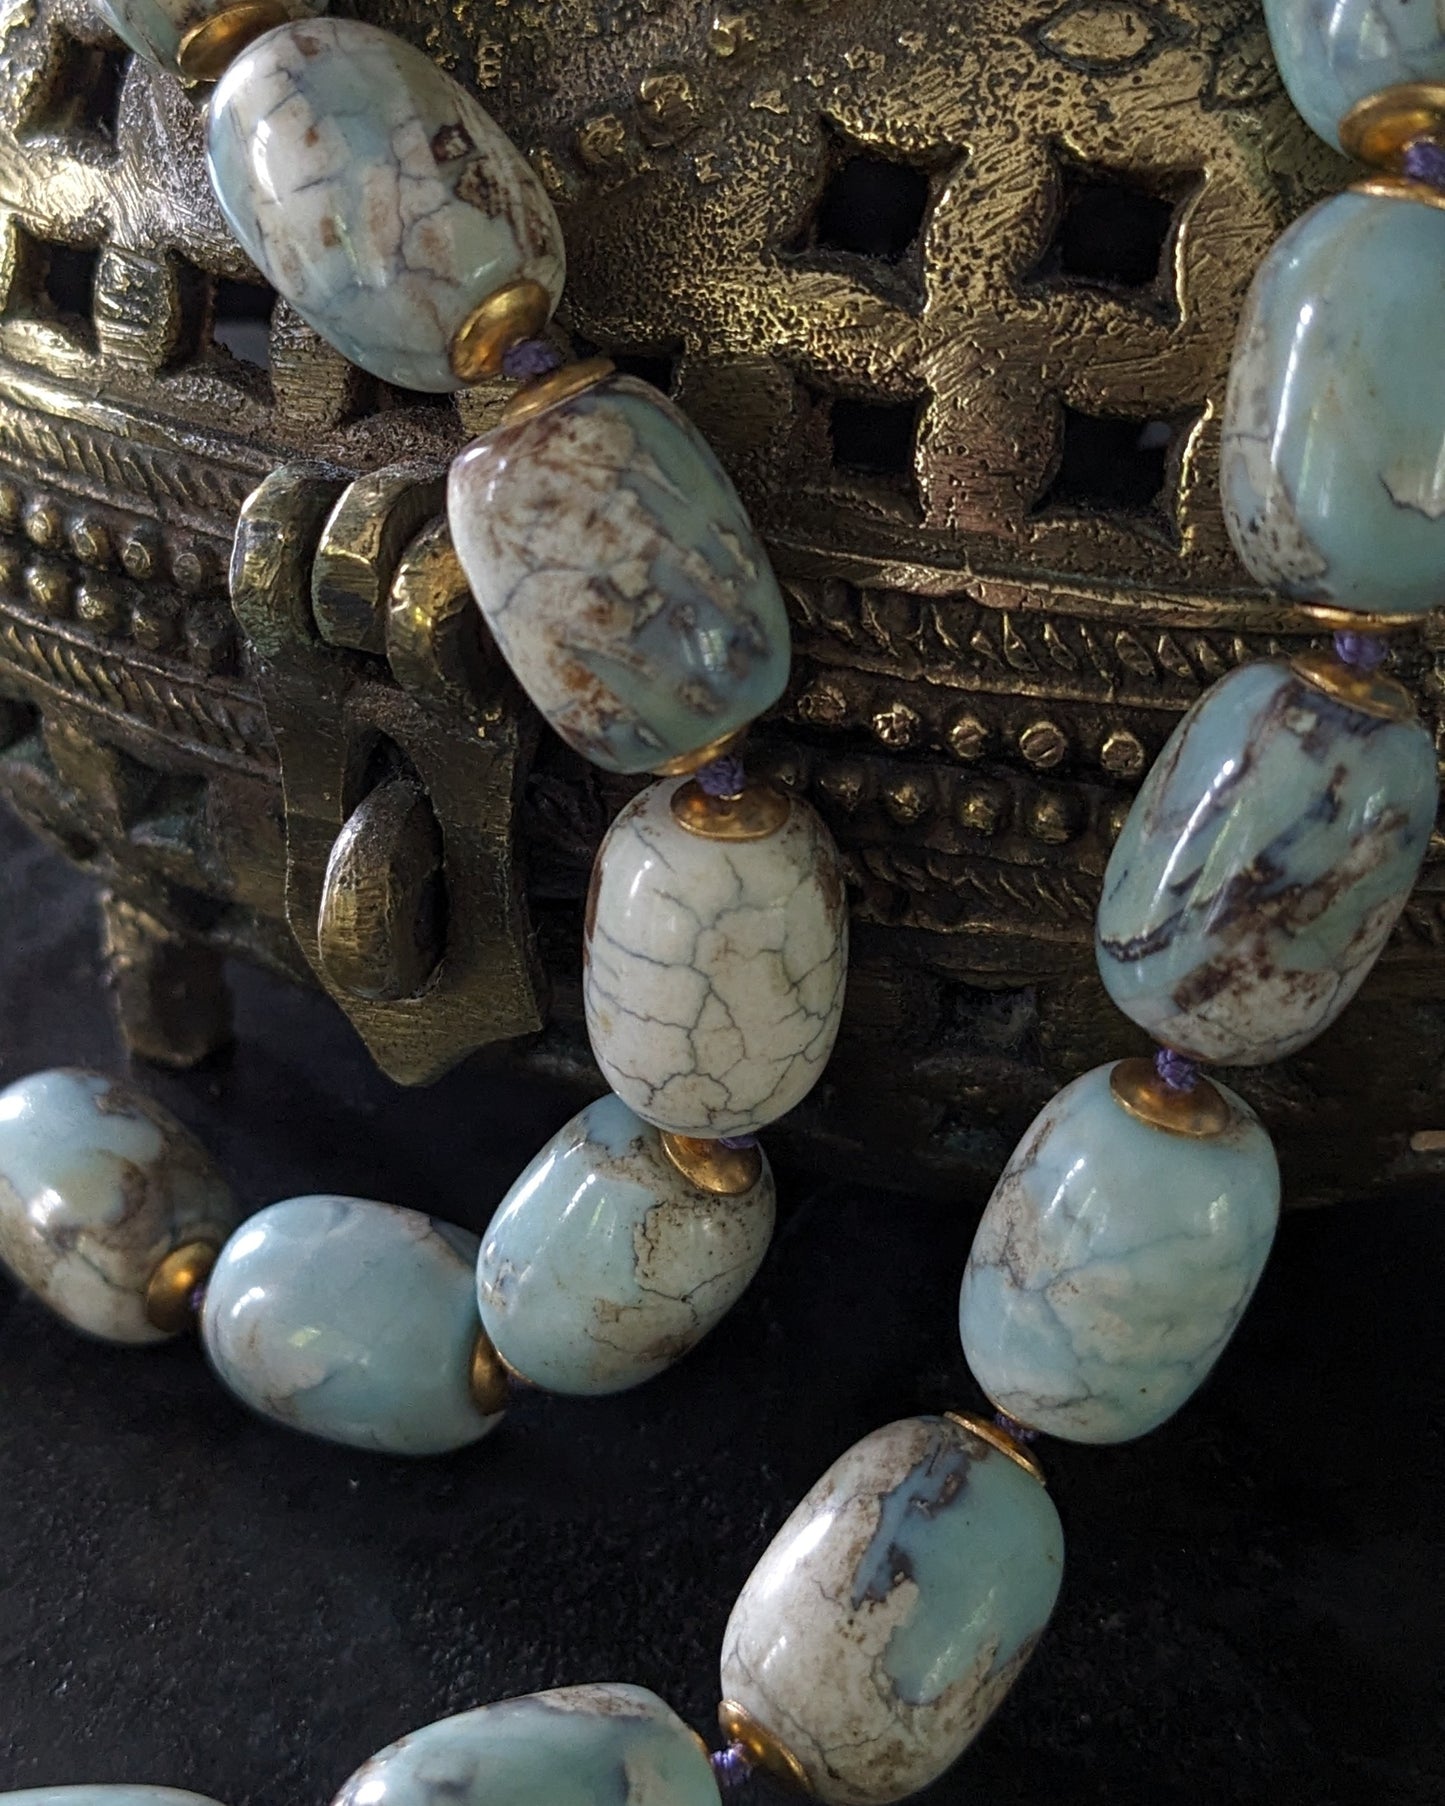 Collier ethnique en agates bleues et boite à amulette du Rajasthan